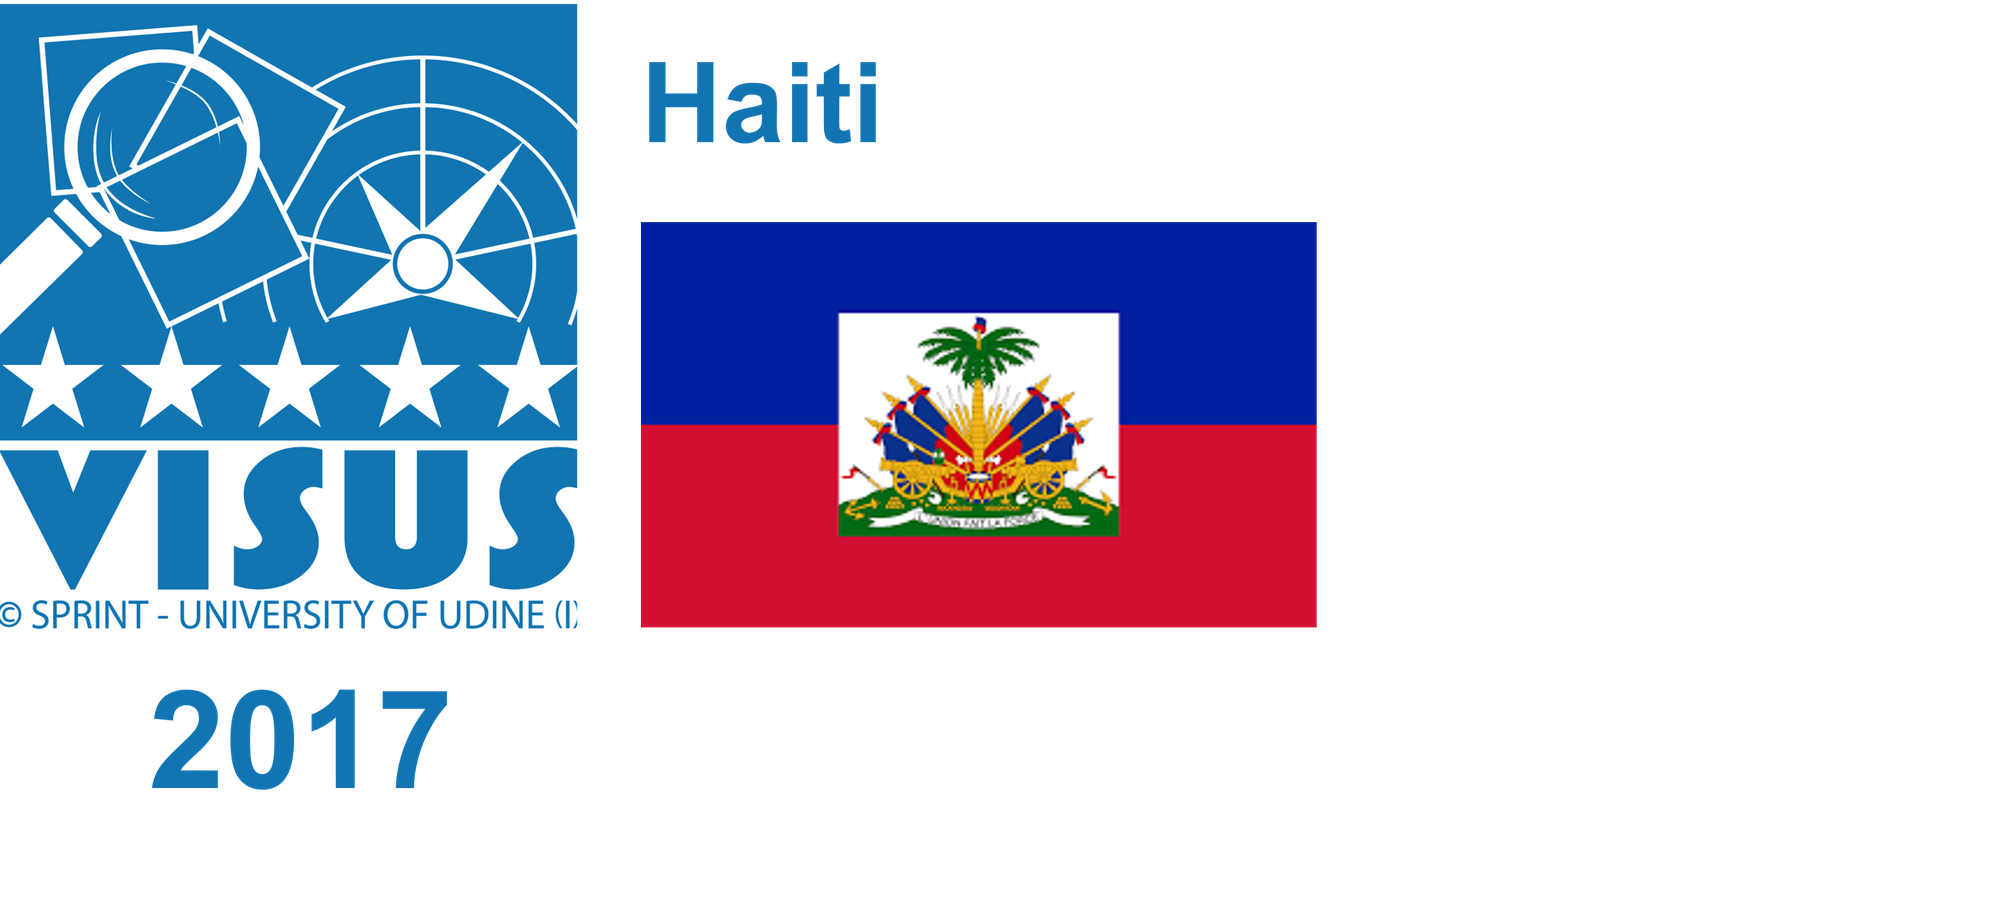 Haiti, 2017